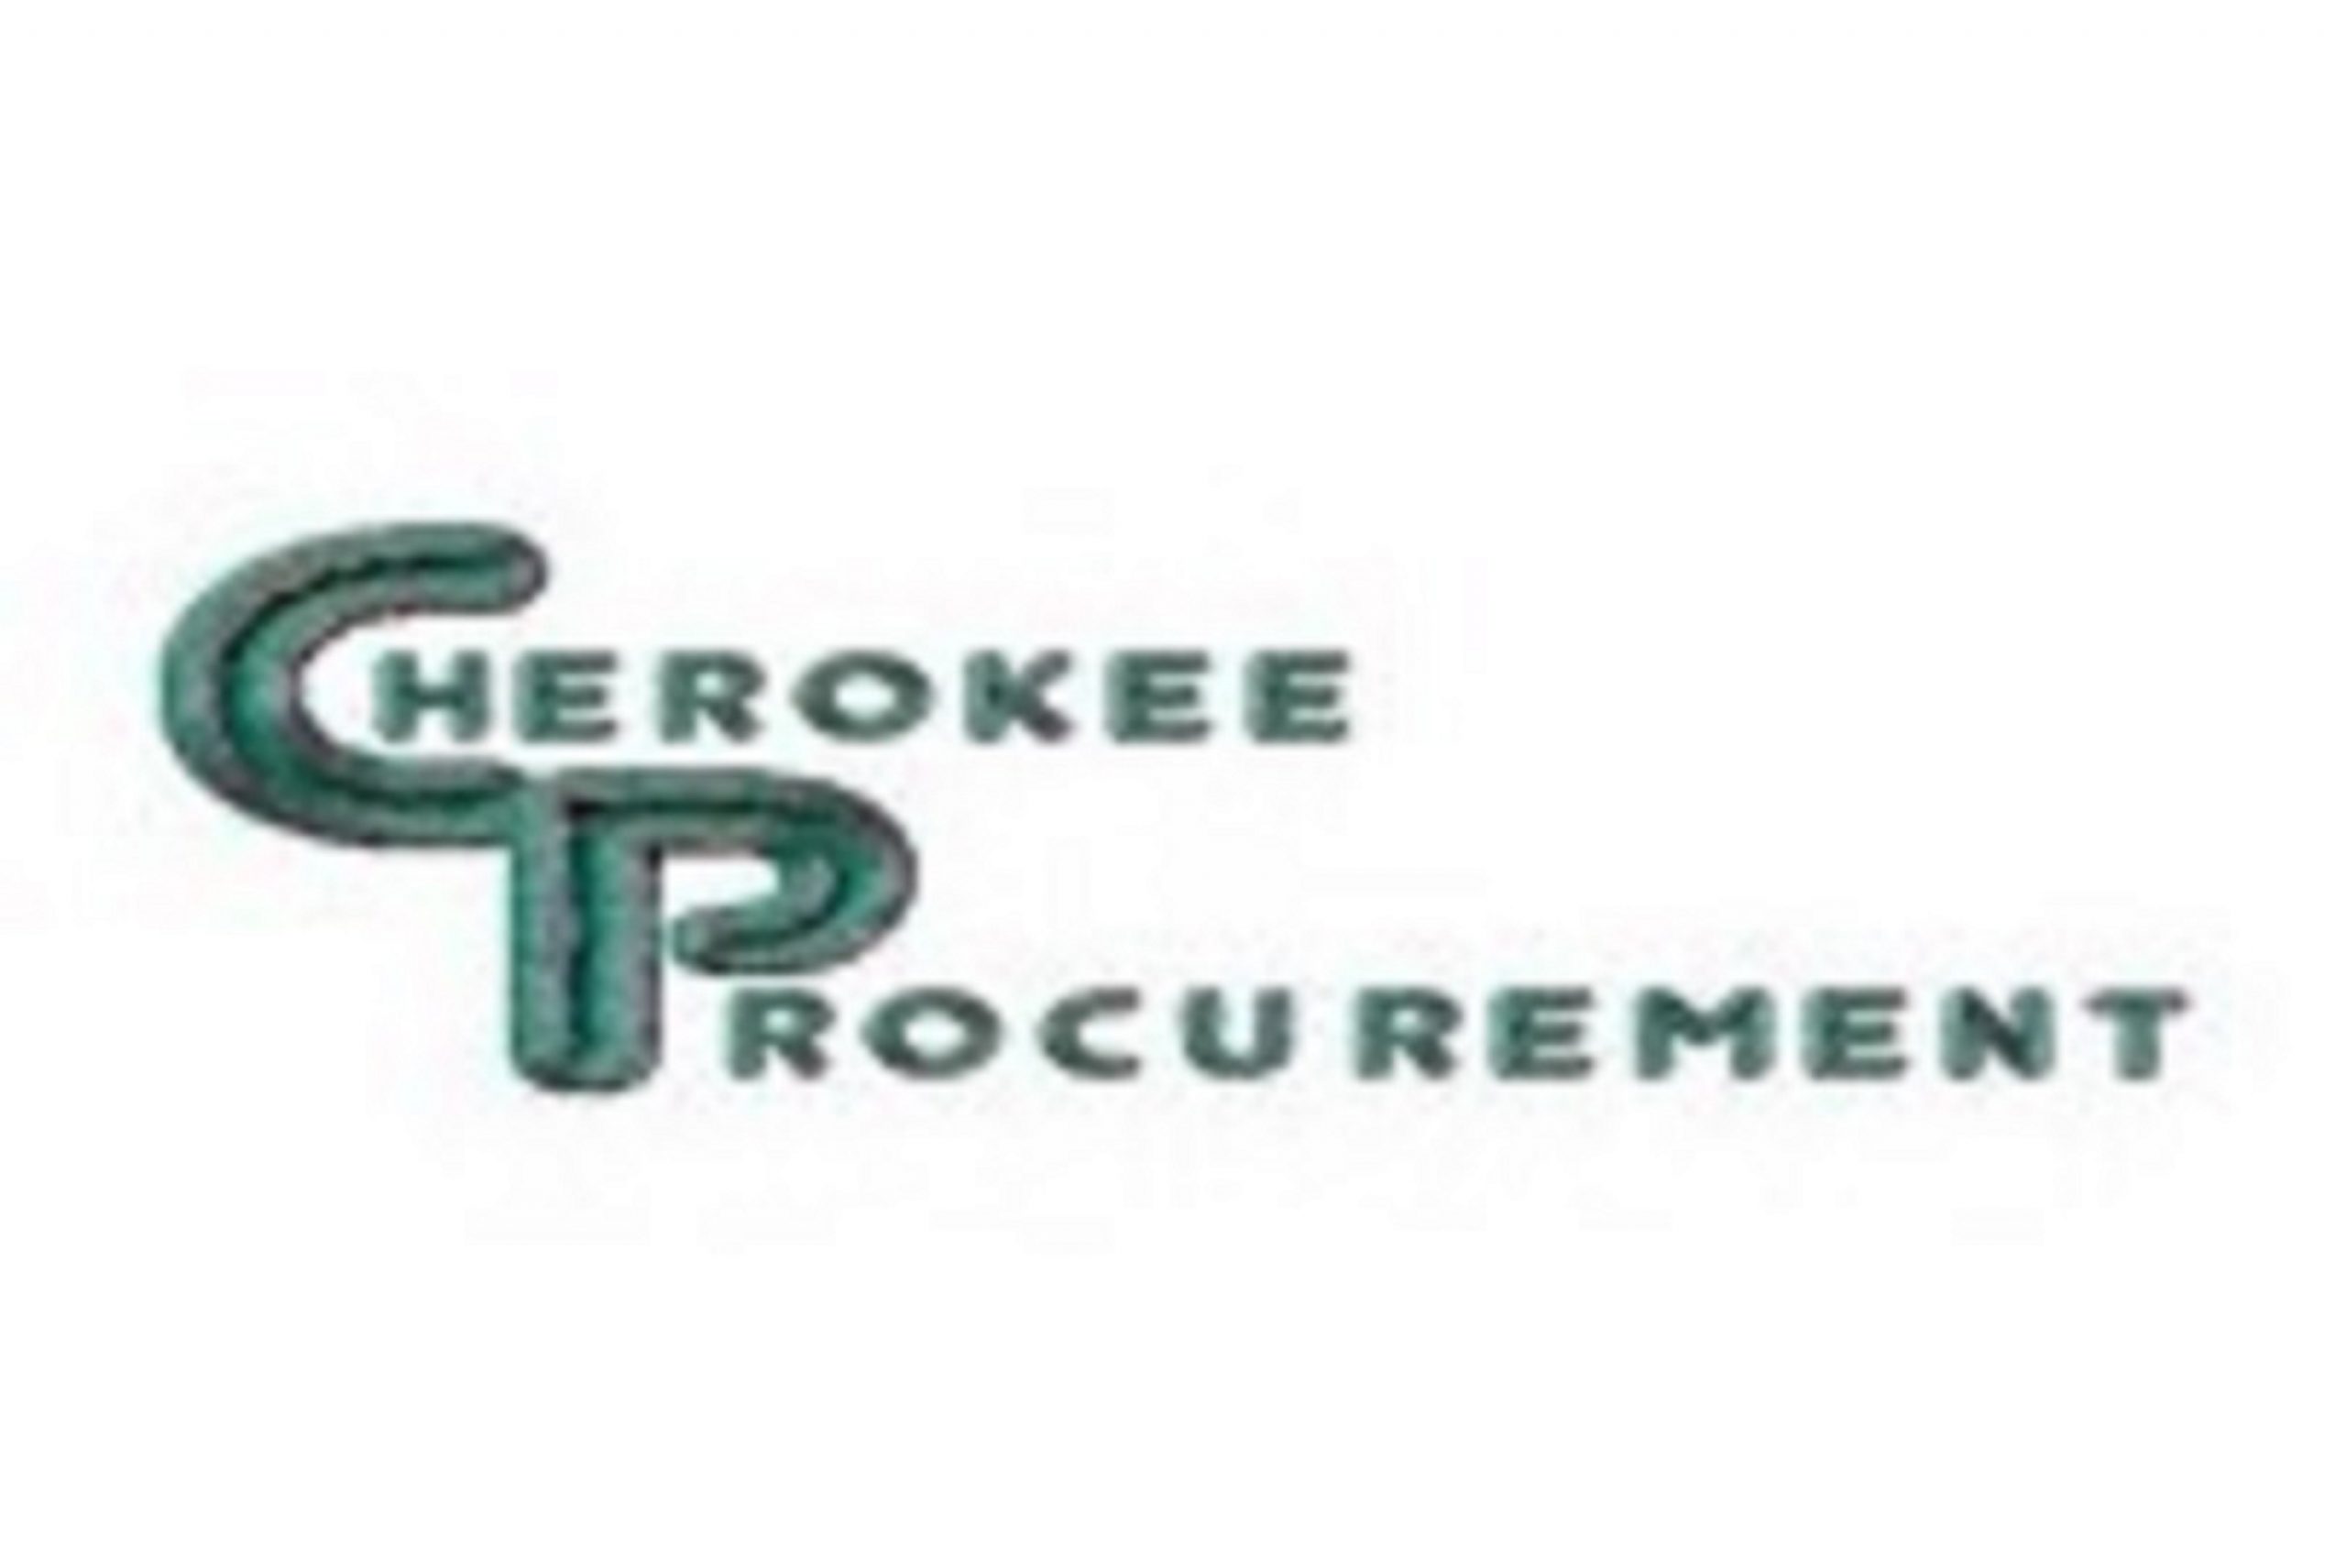 Cherokee Procurement